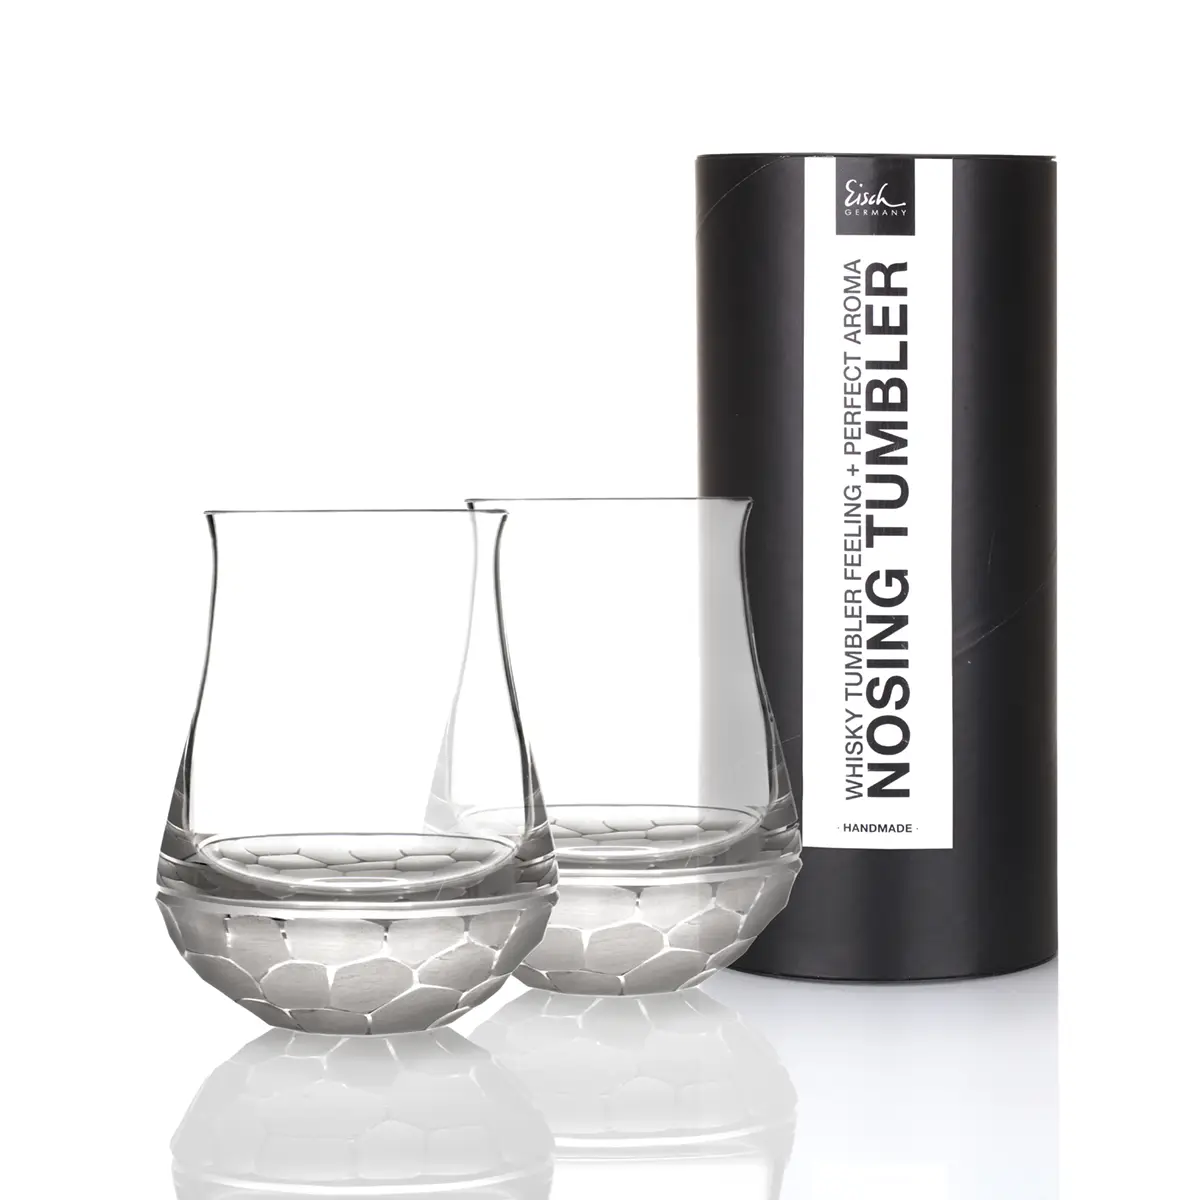 Eisch Whisky Set - Hamilton - 2 Nosing Tumbler aus Kristallglas in Geschenkröhre